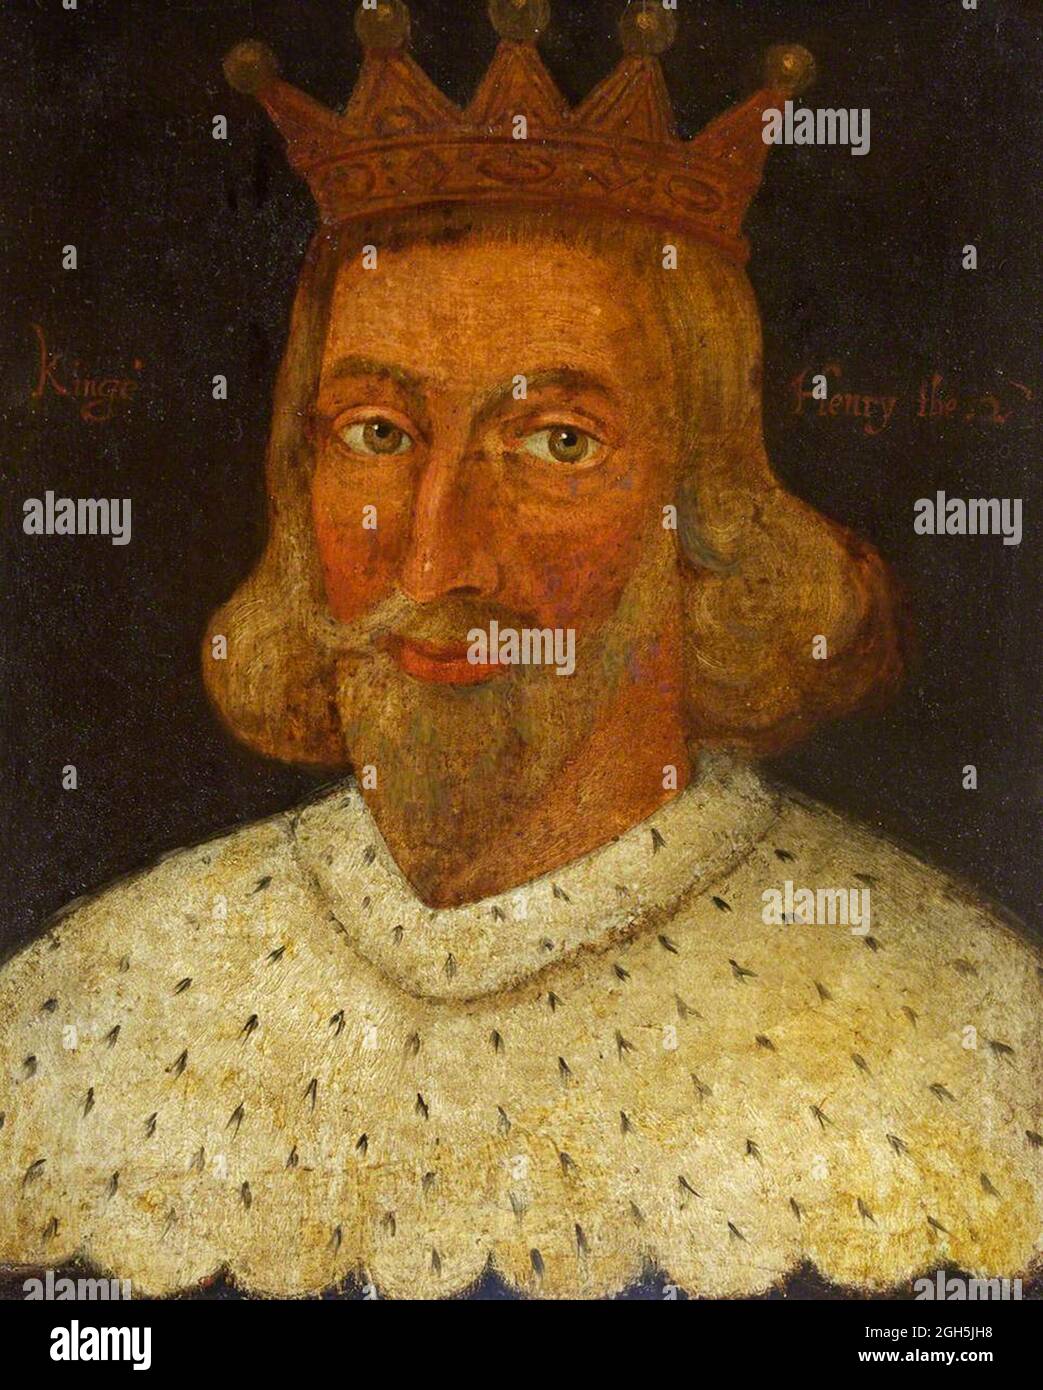 Ritratto di re Enrico II (Enrico Curtmantle) che fu re d'Inghilterra dal 1154 al 1189 Foto Stock